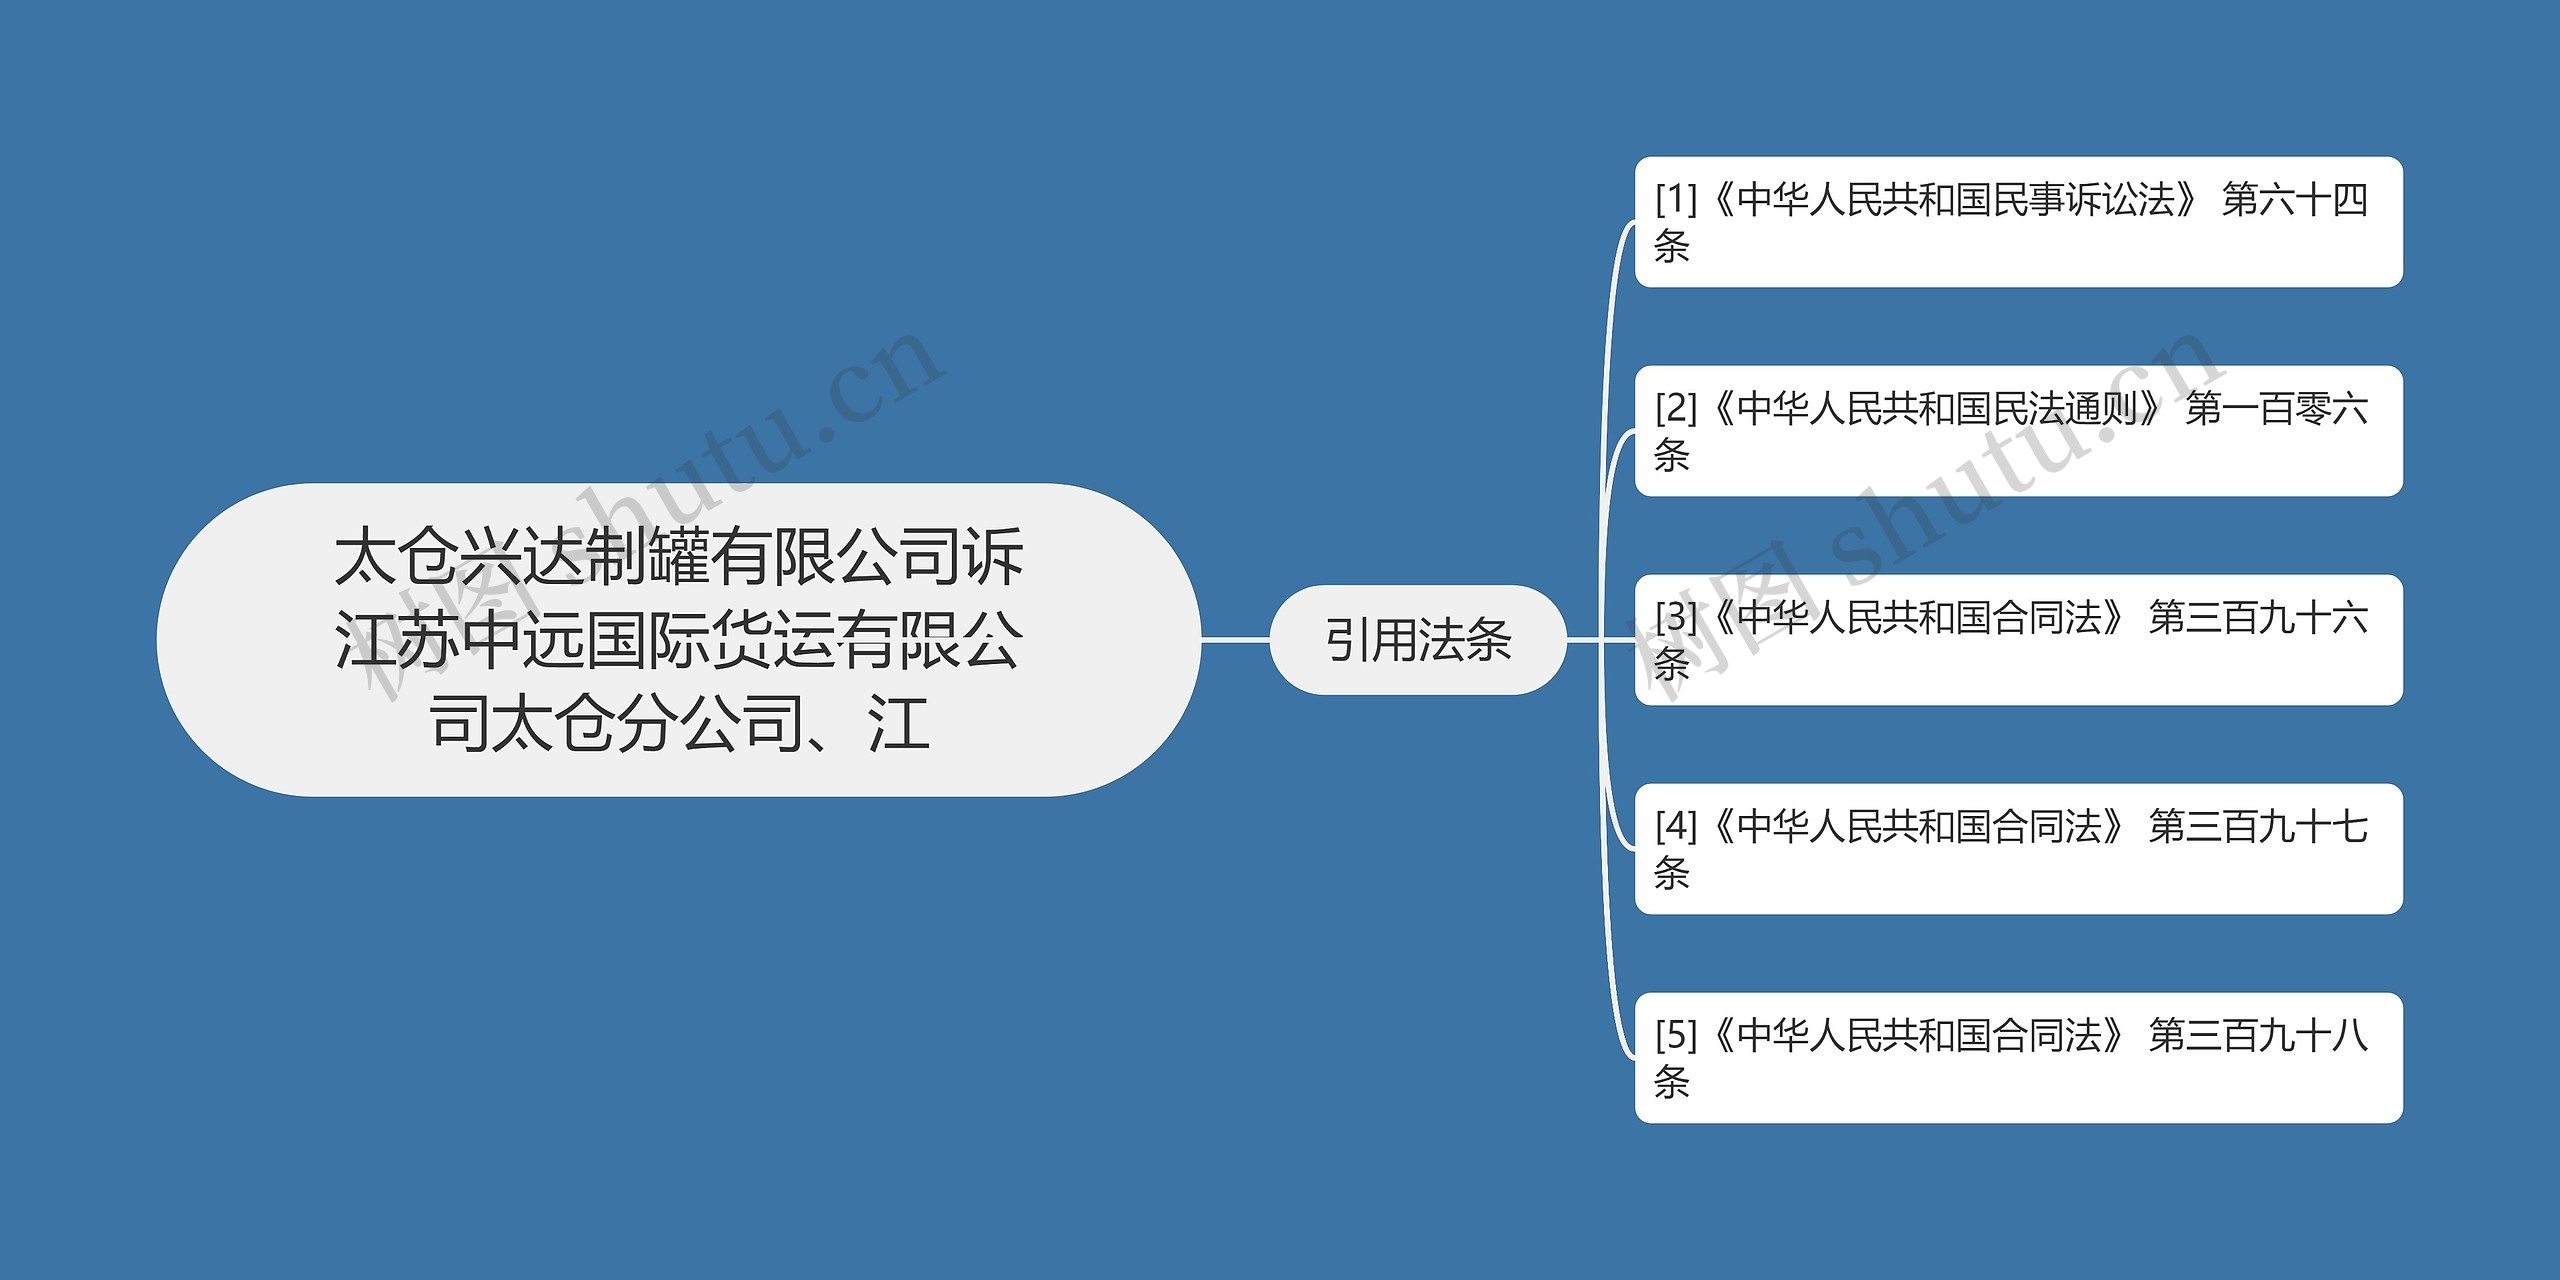 太仓兴达制罐有限公司诉江苏中远国际货运有限公司太仓分公司、江